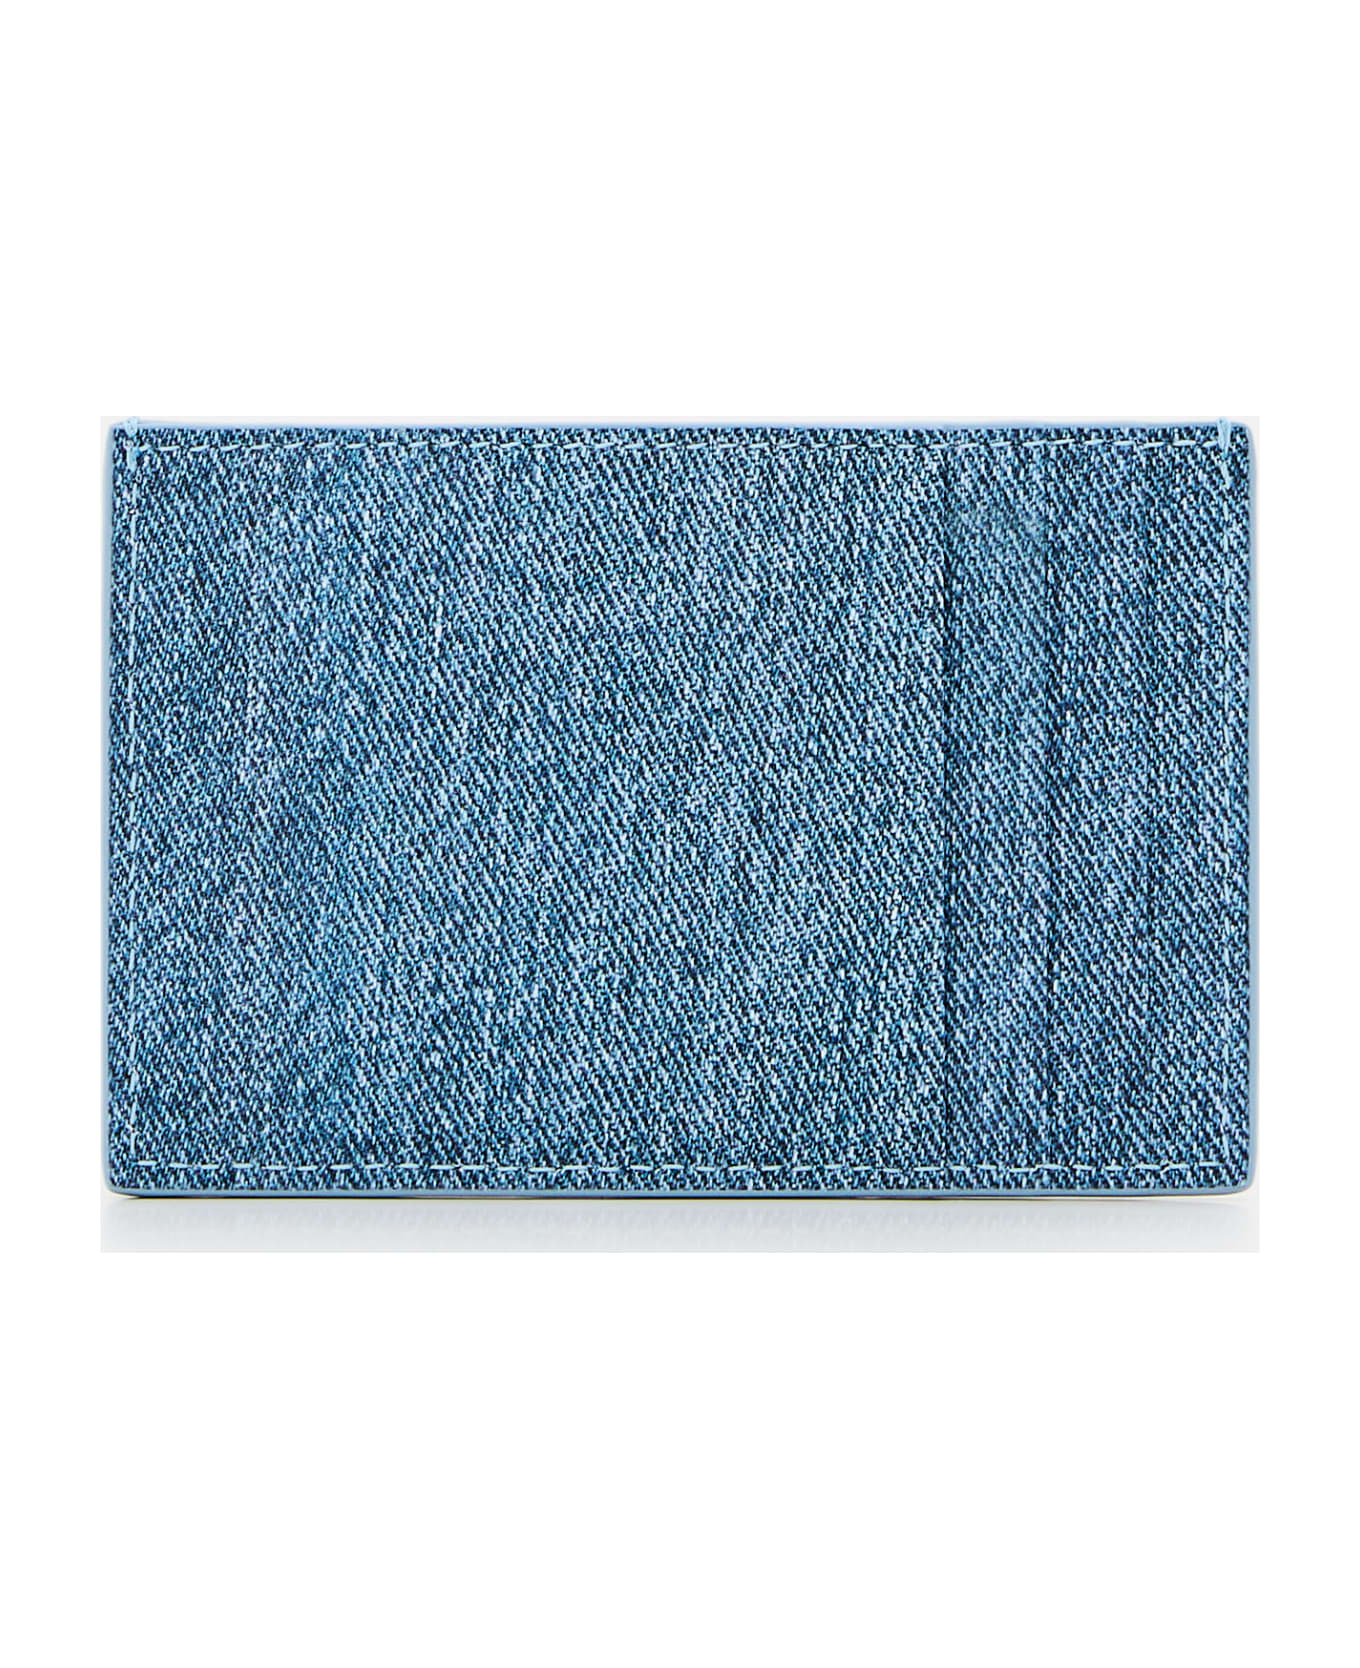 Bottega Veneta Leather Cassette Card Holder - Clear Blue